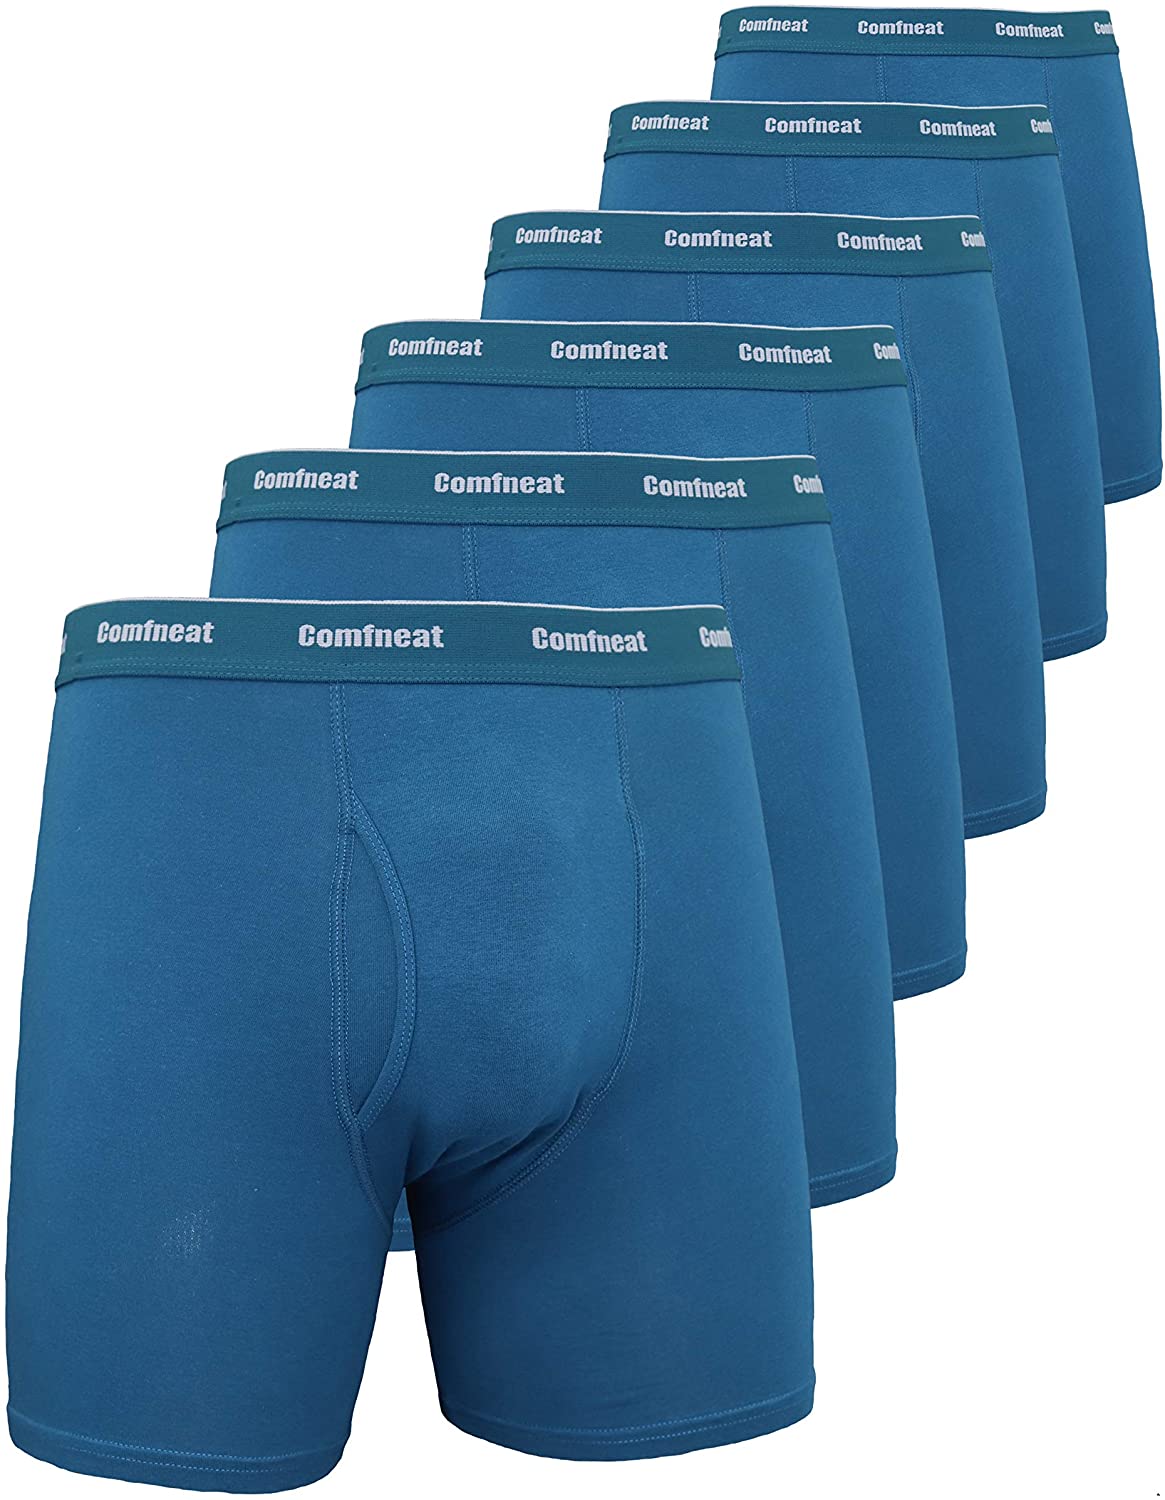 Comfneat Men's 6-Pack Boxer Briefs Cotton Spandex S-XXL Soft Tagless Underwear 